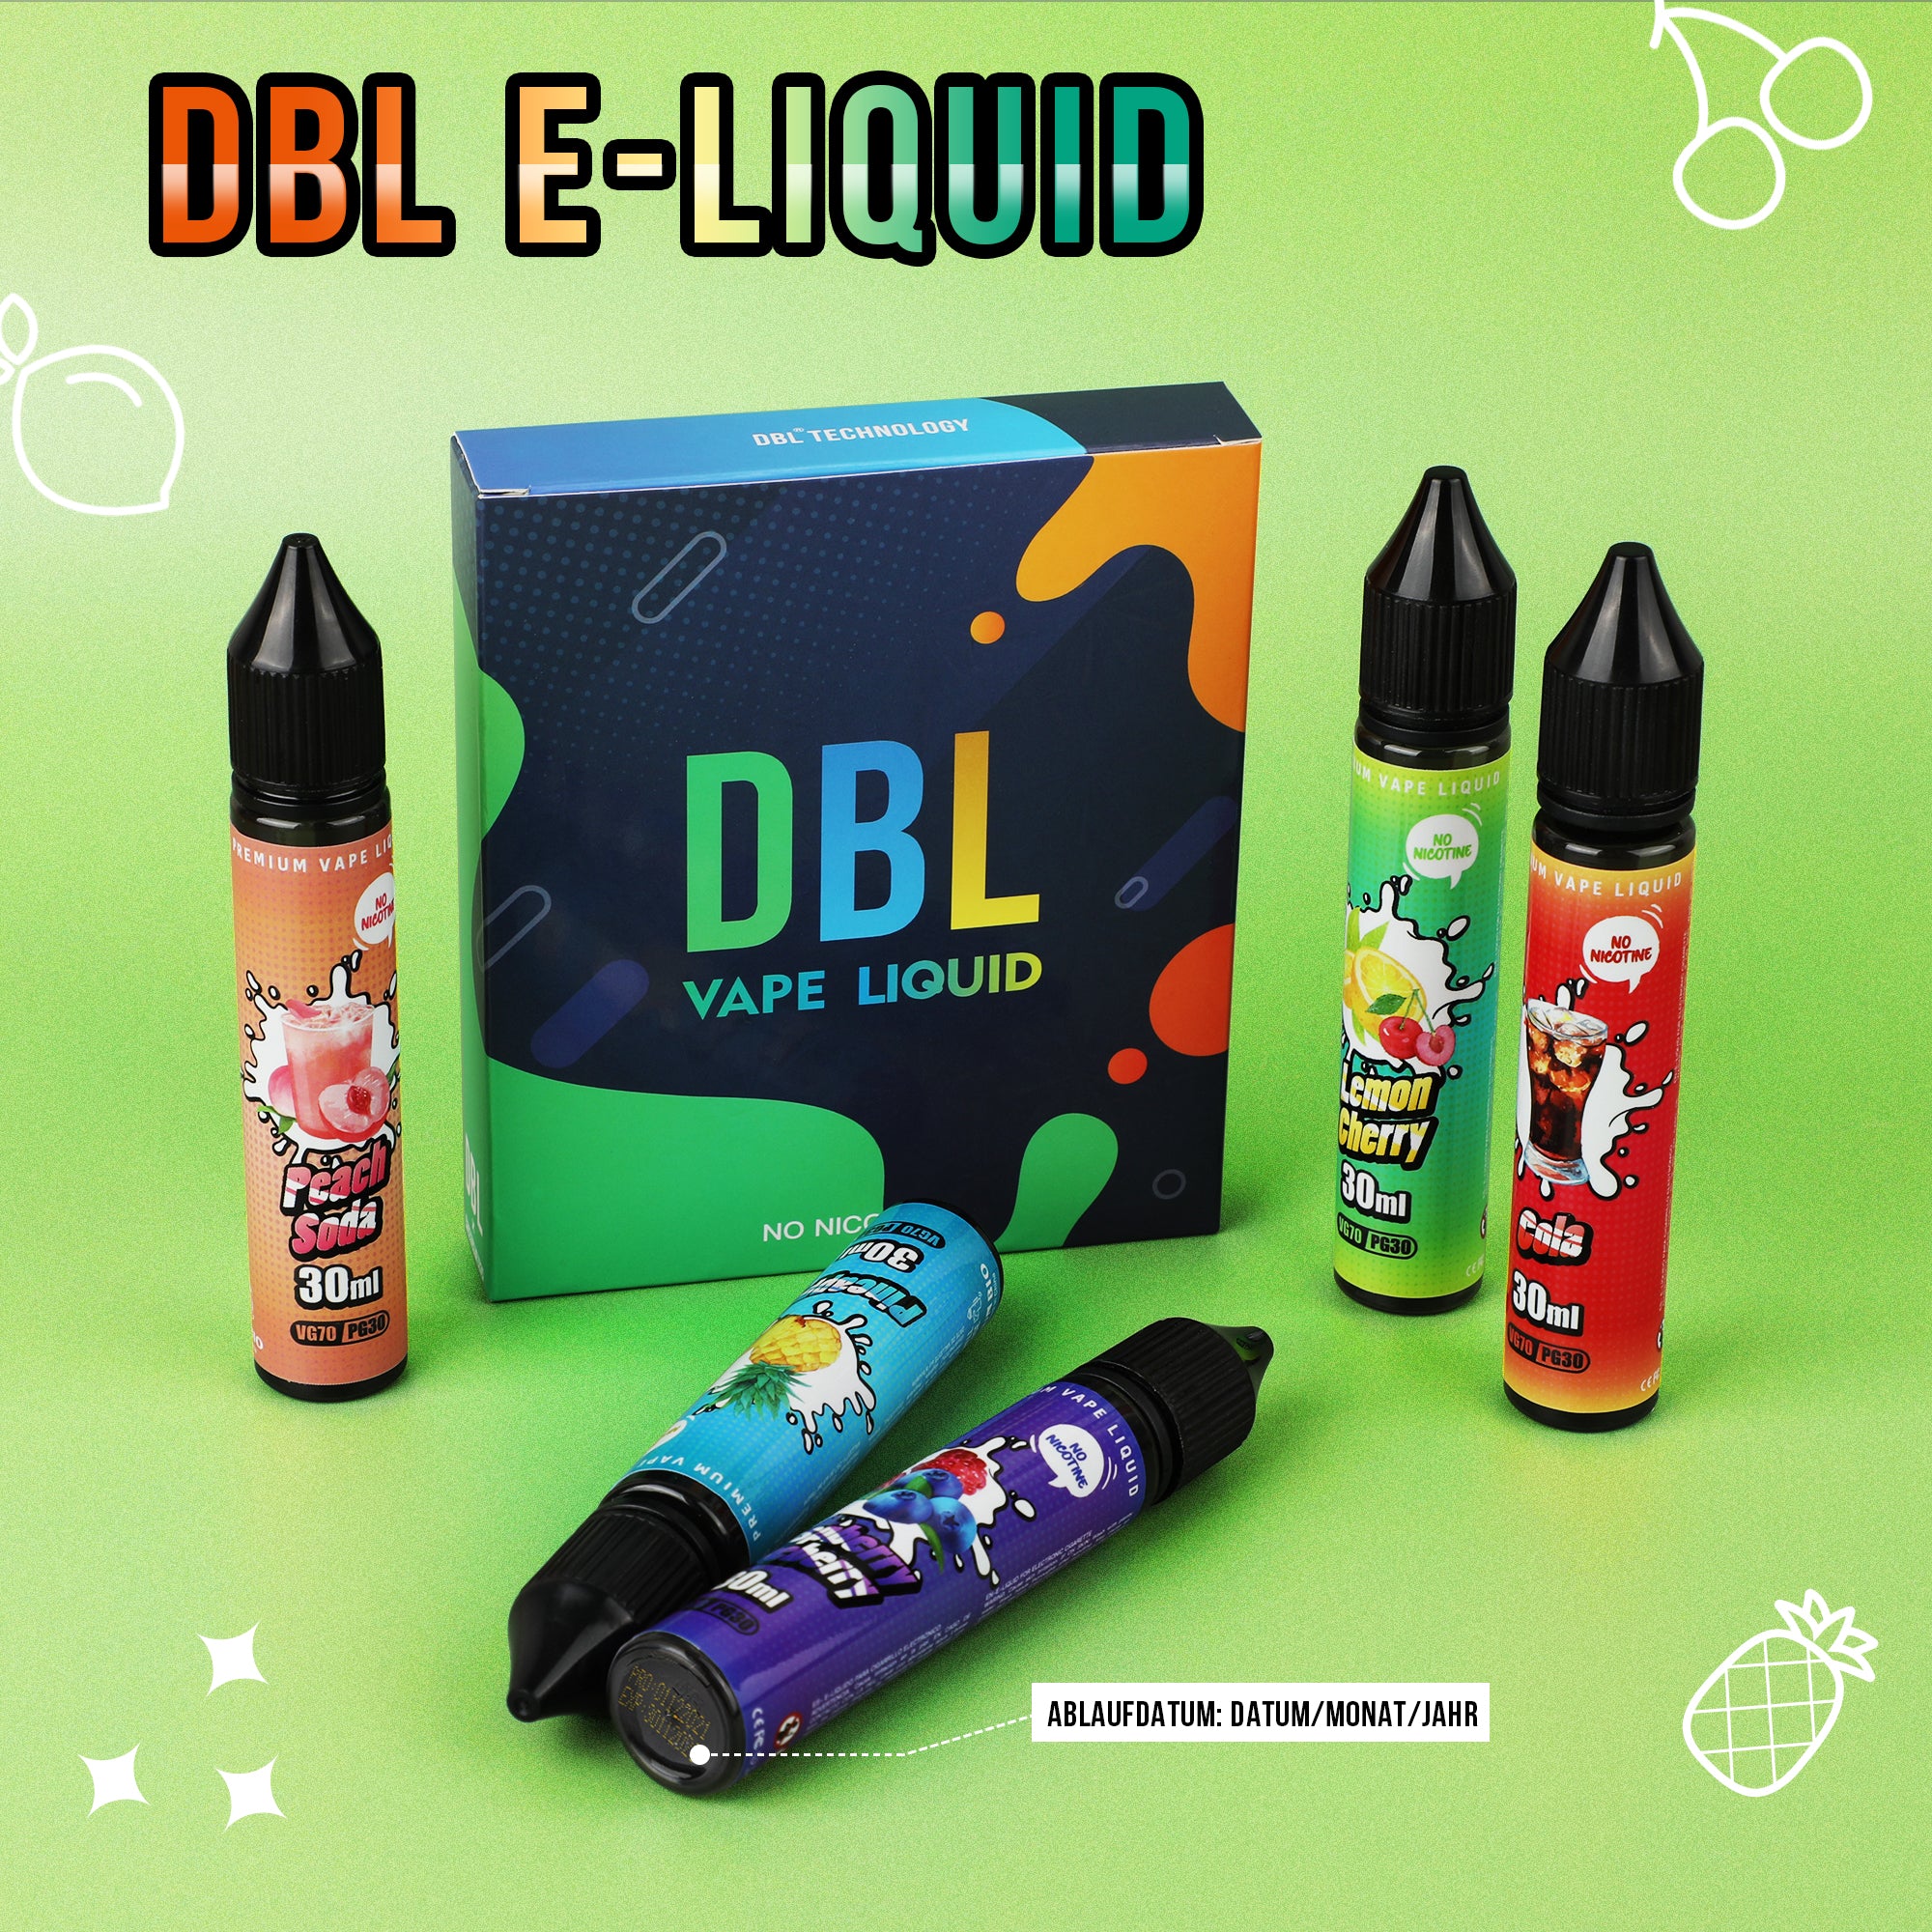 DBL E Liquid Collection 5 x 30ml No Nicotine 70/30